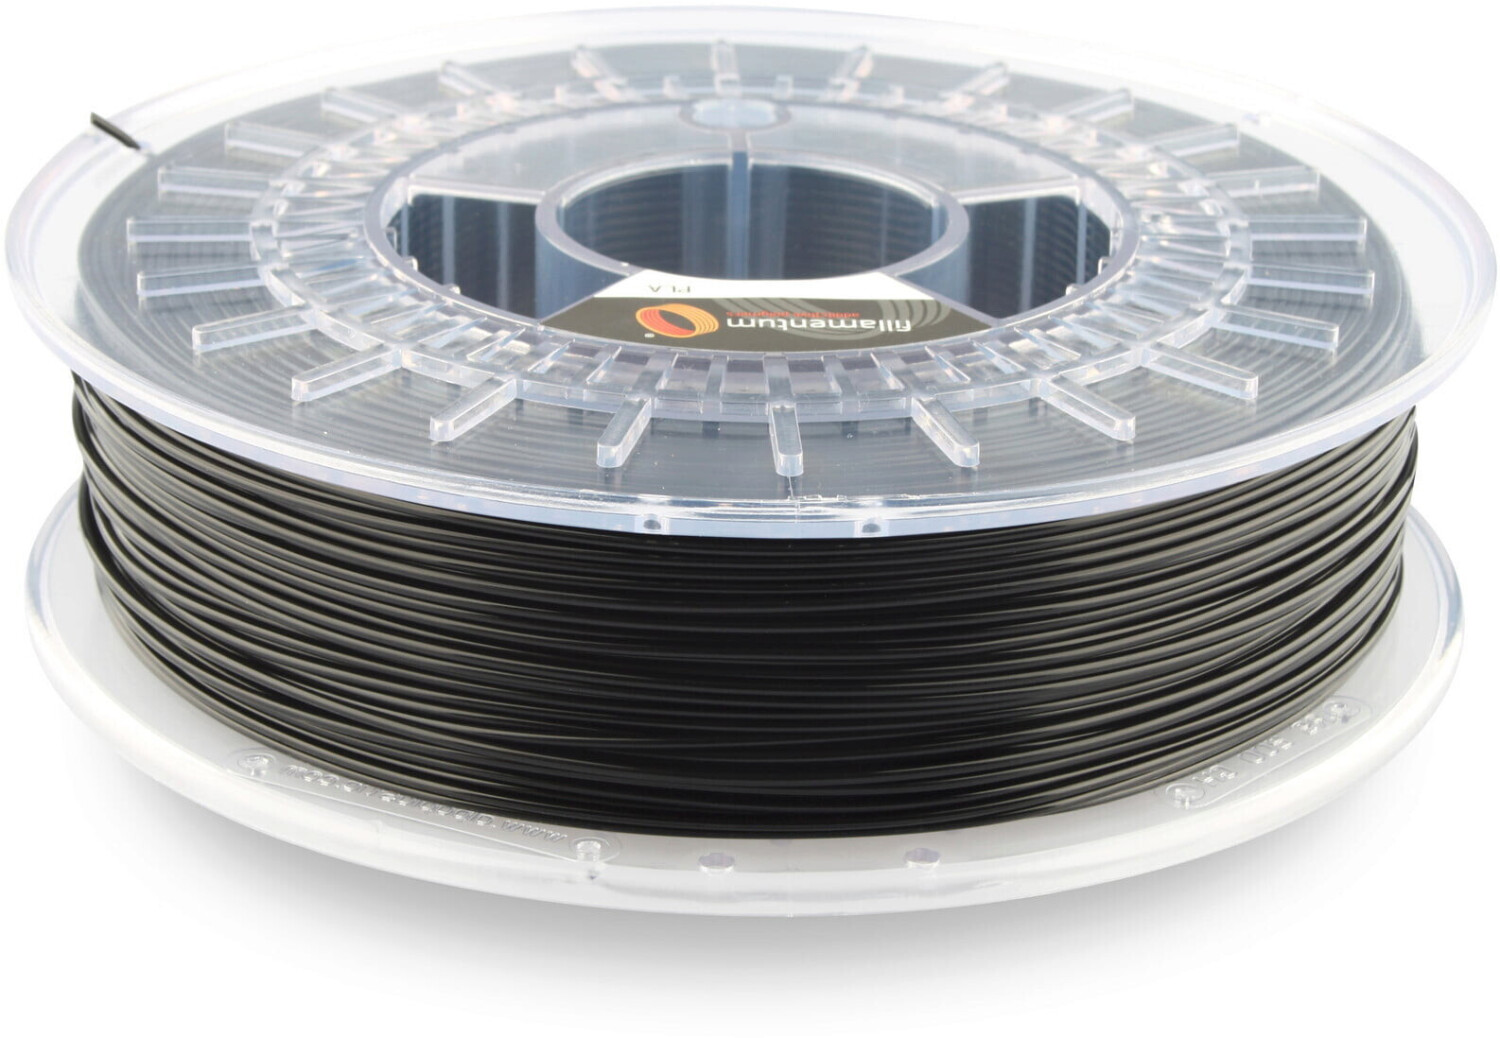 PLA Filament EasyFil PLA 1.75mm Black 750 Gram 3D Printer Filament